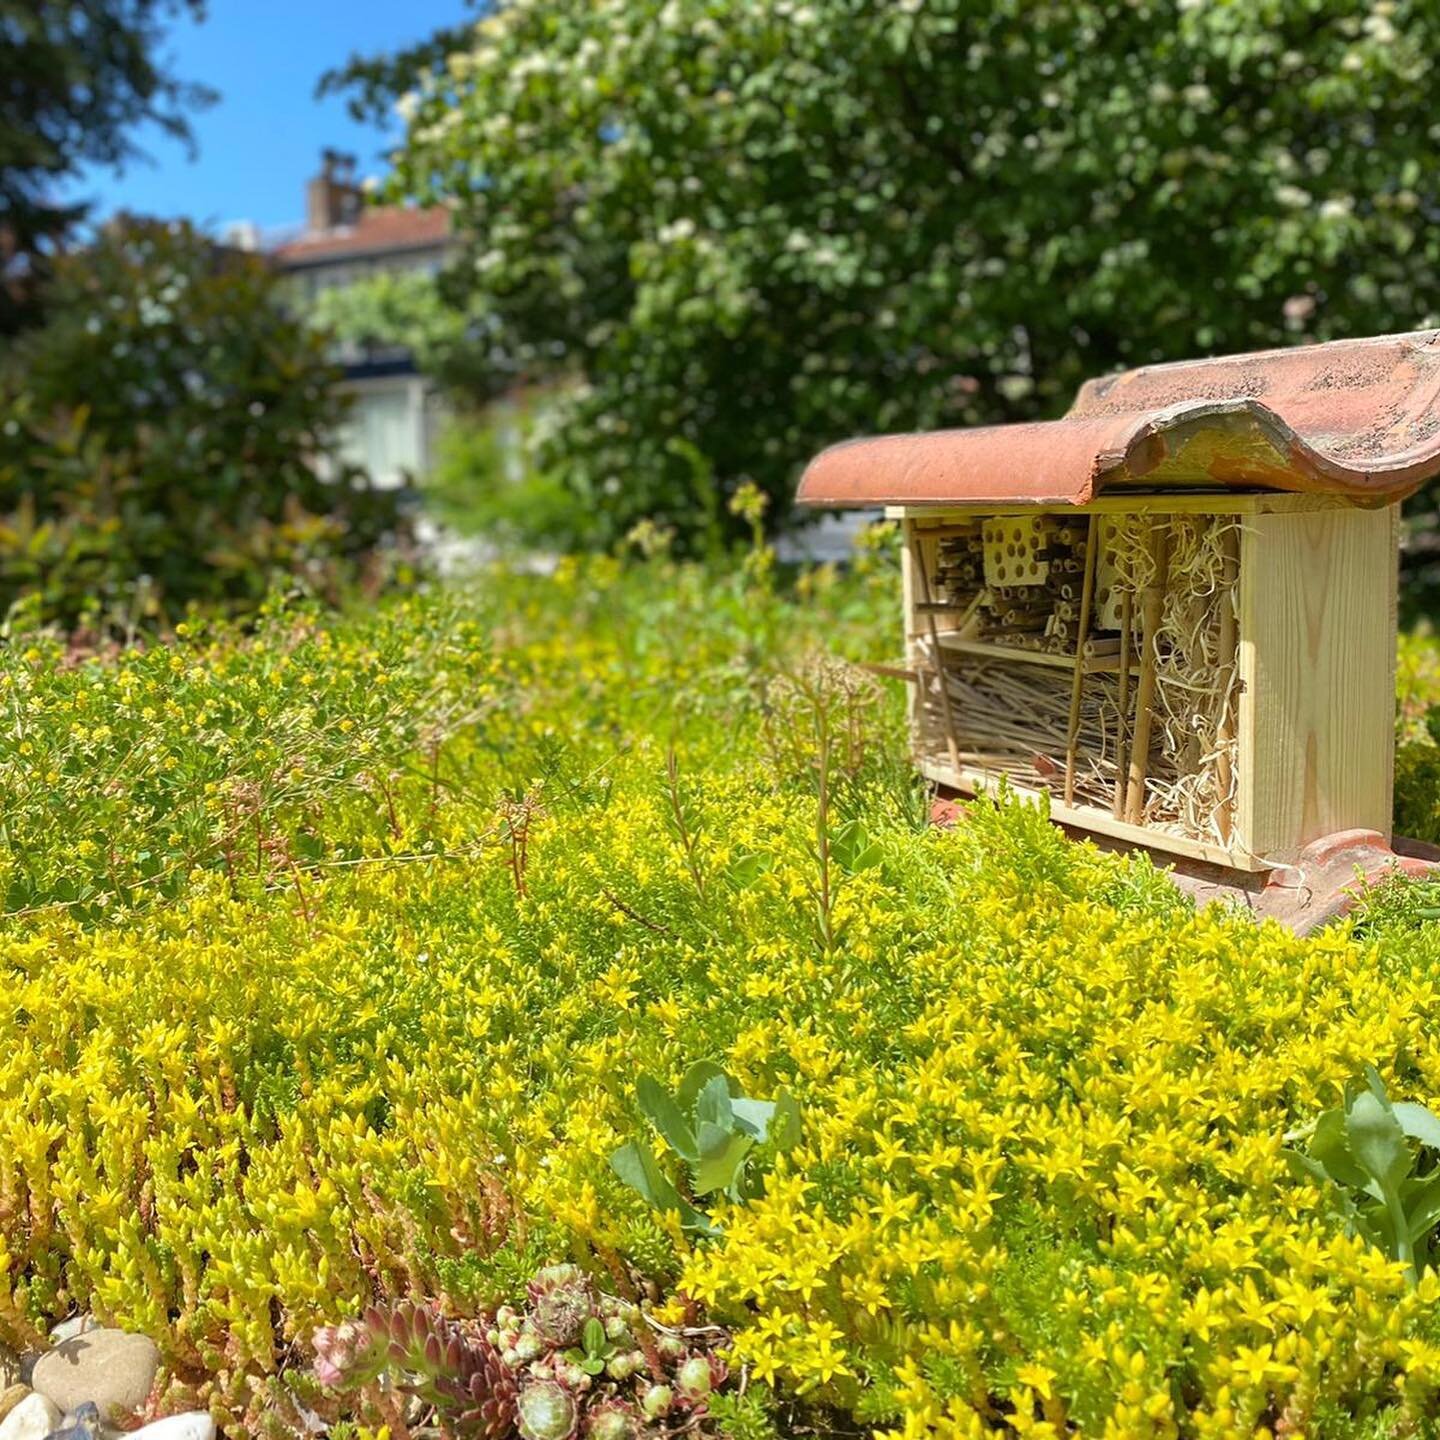 Vandaag met de kids een bijenhotel geklust van een wijnkistje, wat oude bamboo stokken en hout en dakpannen uit een bouwcontainer om de hoek: voila!

Het sedum dak gonst van de bijen, dus we zijn benieuwd of ze hier komen wonen en eitjes zullen legge